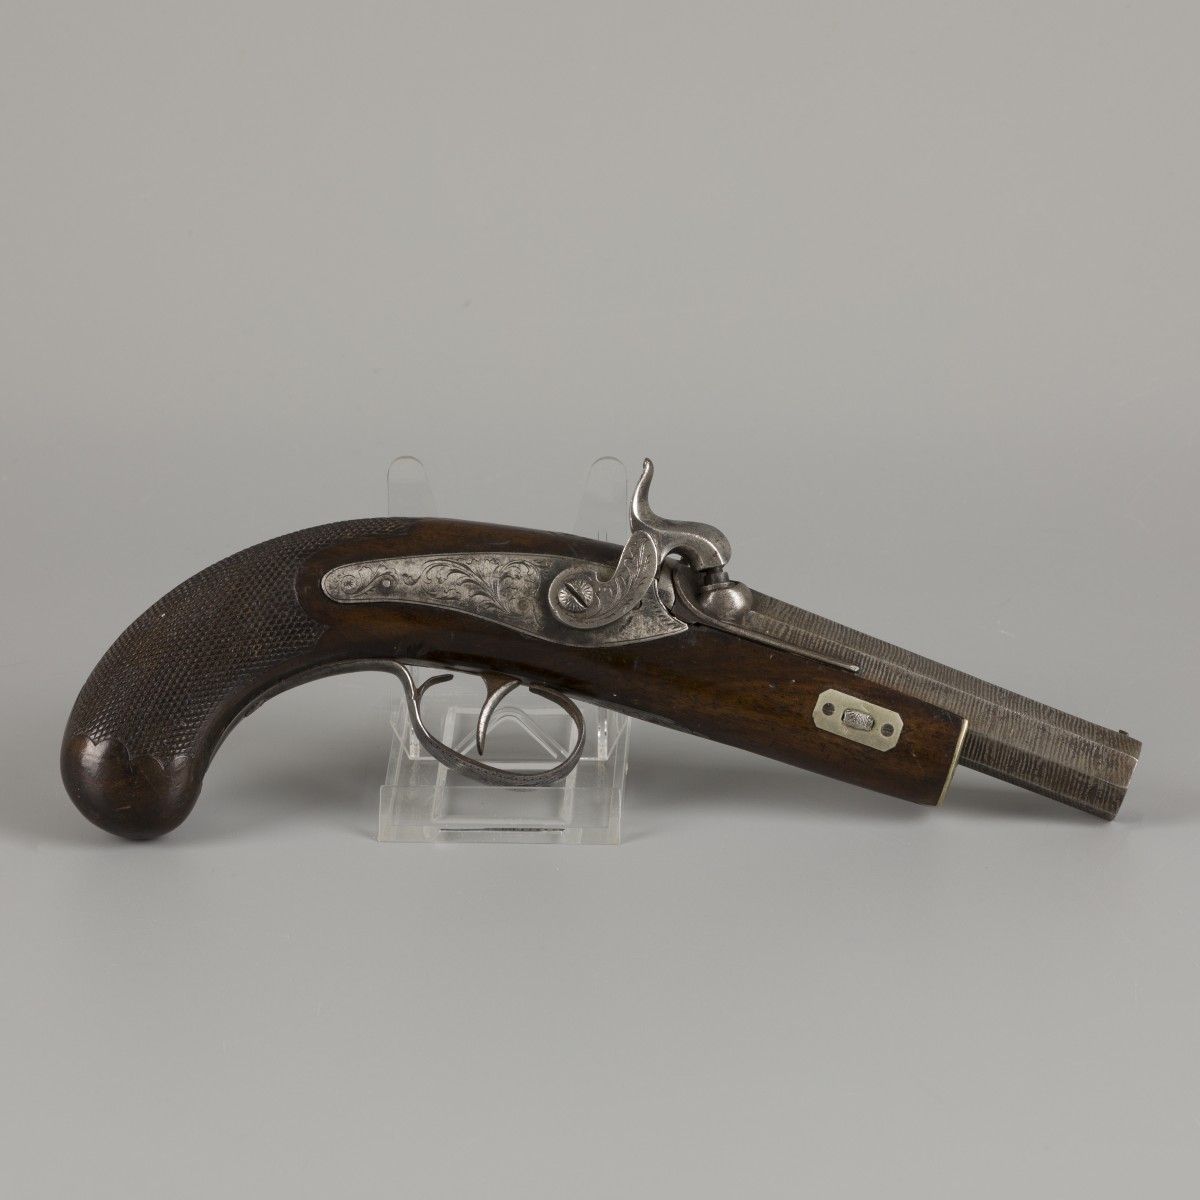 A 19th C. Percussion pistol with ciseled barrel. Falta la baqueta.

Longitud tot&hellip;